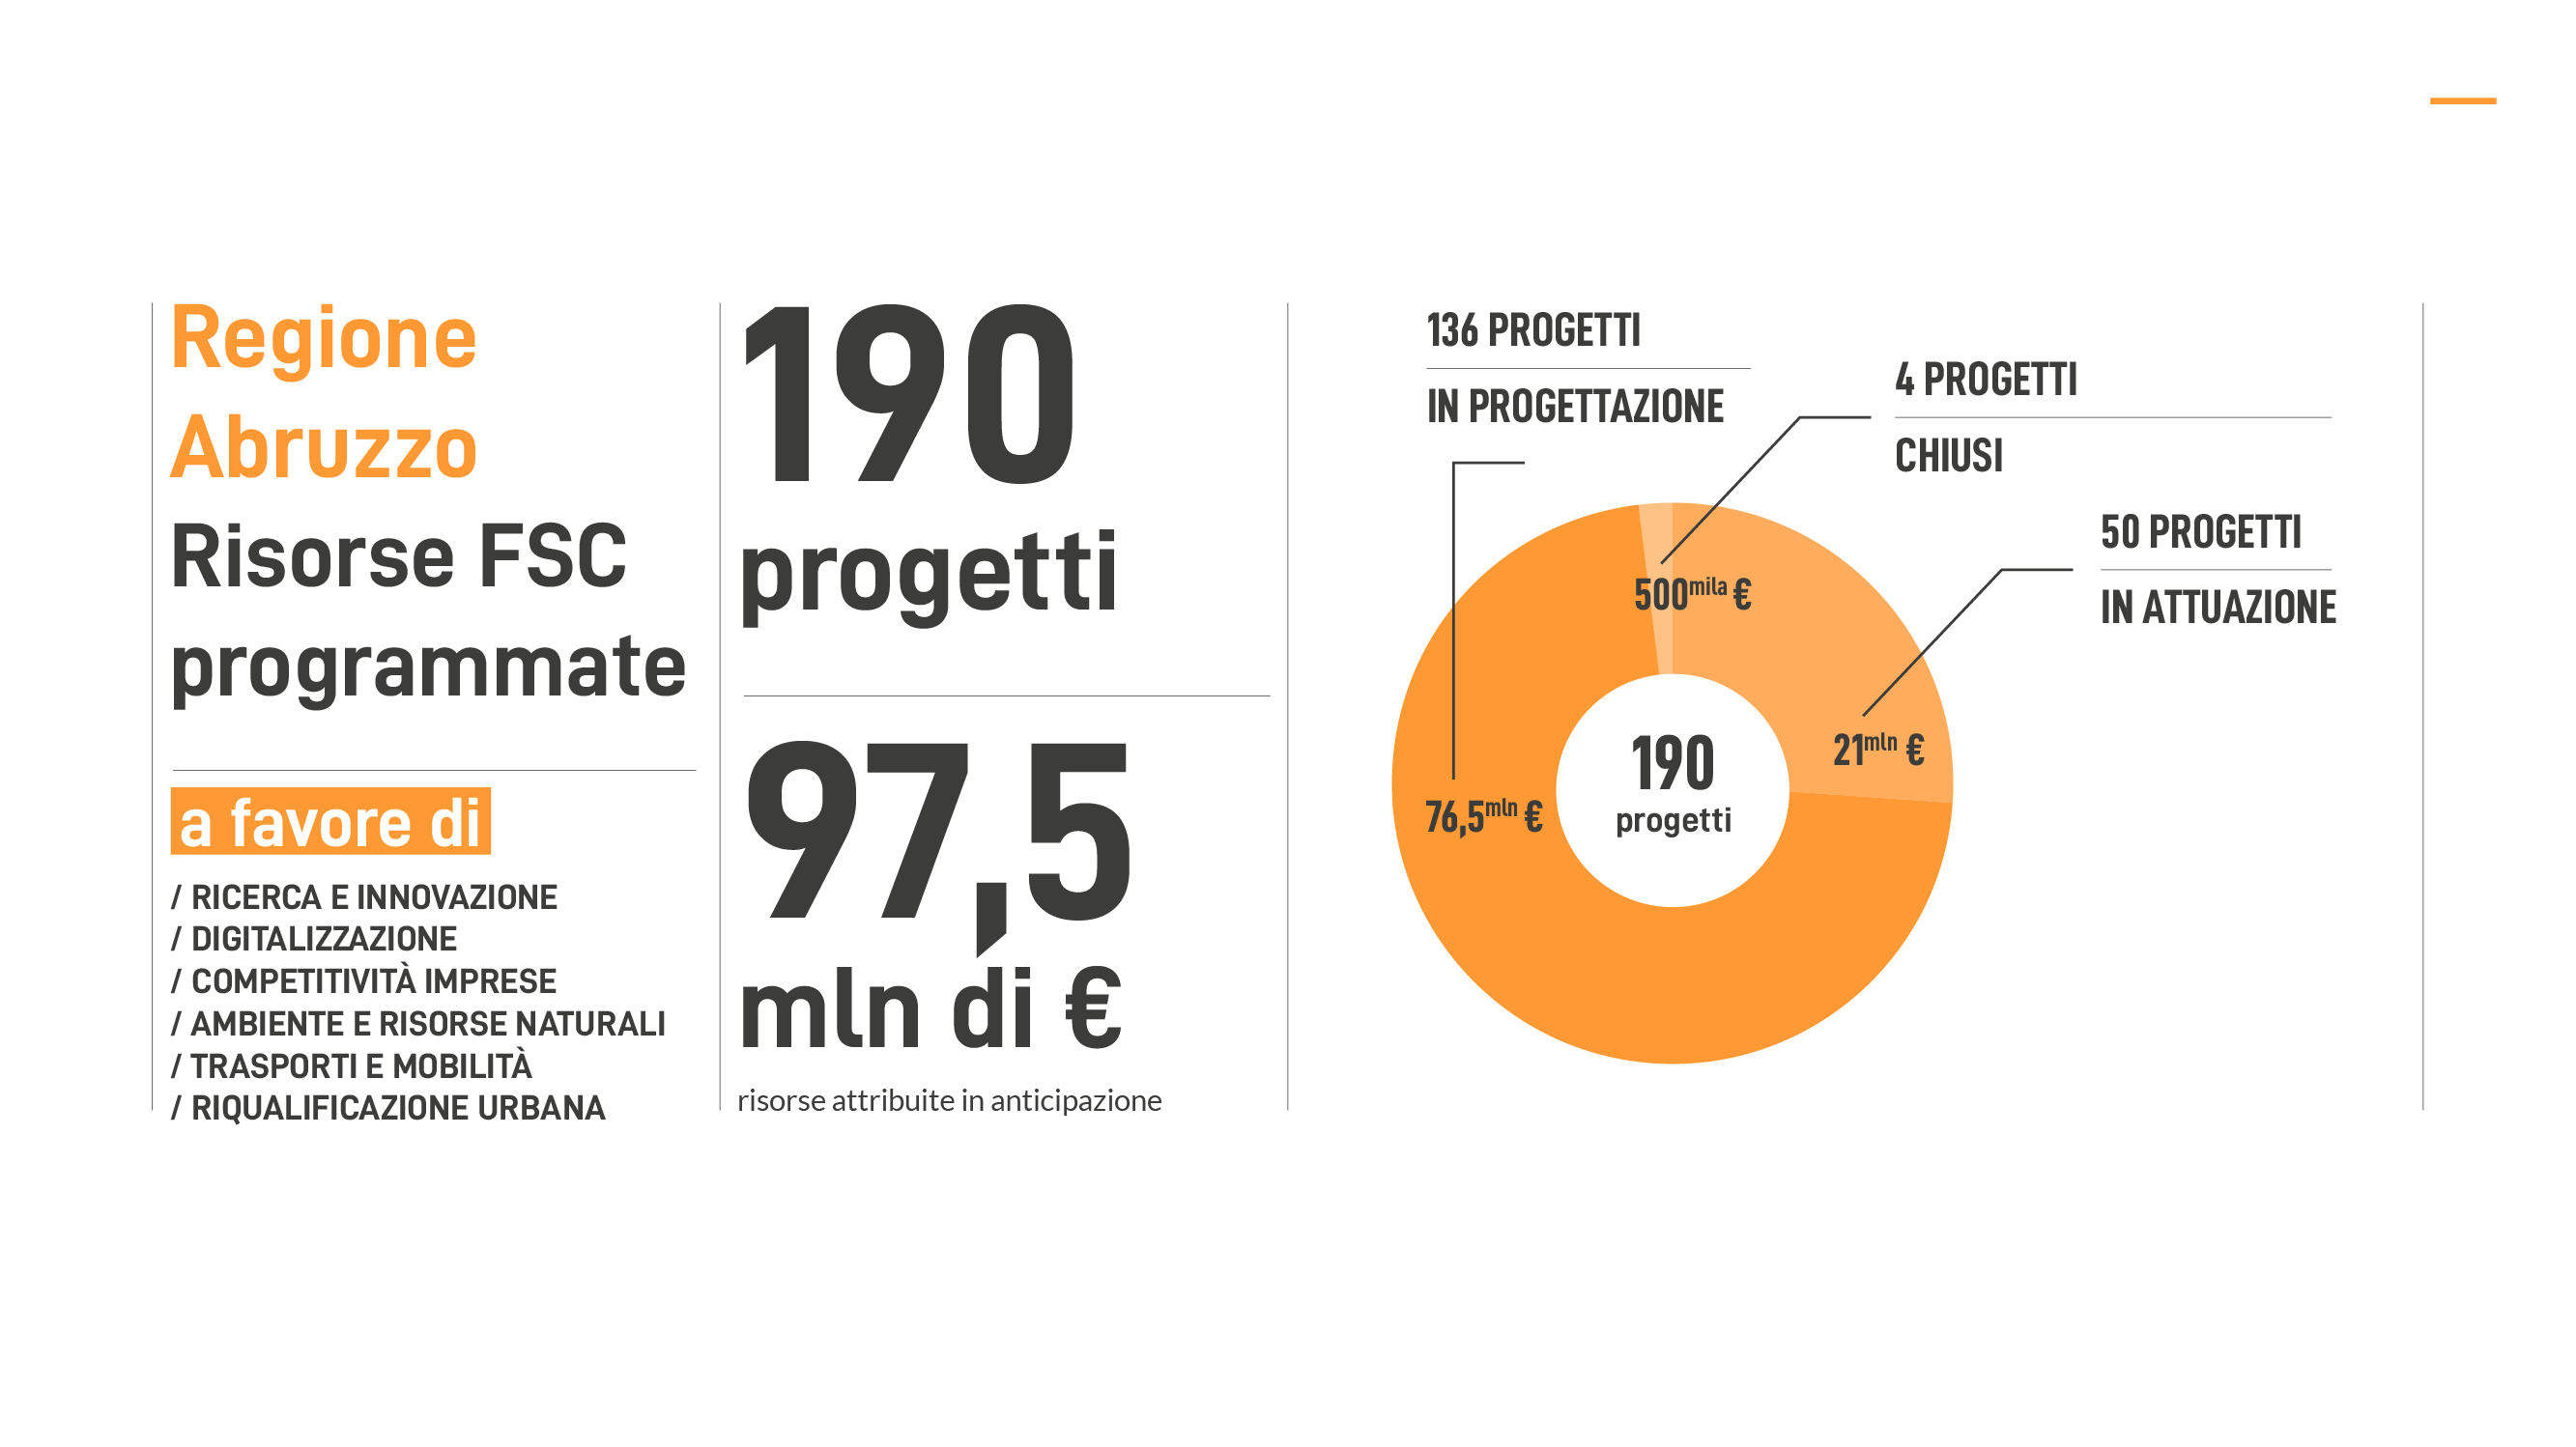 Infografica: Risorse FSC programmate a favore di: RICERCA E INNOVAZIONE, DIGITALIZZAZIONE, COMPETITIVITÀ IMPRESE, AMBIENTE E RISORSE NATURALI, TRASPORTI E MOBILITÀ, RIQUALIFICAZIONE URBANA. 190 progetti e 97.5 milino di euro di risorse attribuite in anticipazione: 136 PROGETTI IN PROGETTAZIONE (76,5 milioni di euro), 4 PROGETTI CHIUSI (500mila euro), 50 PROGETTI IN ATTUAZIONE (21 milioni di euro).